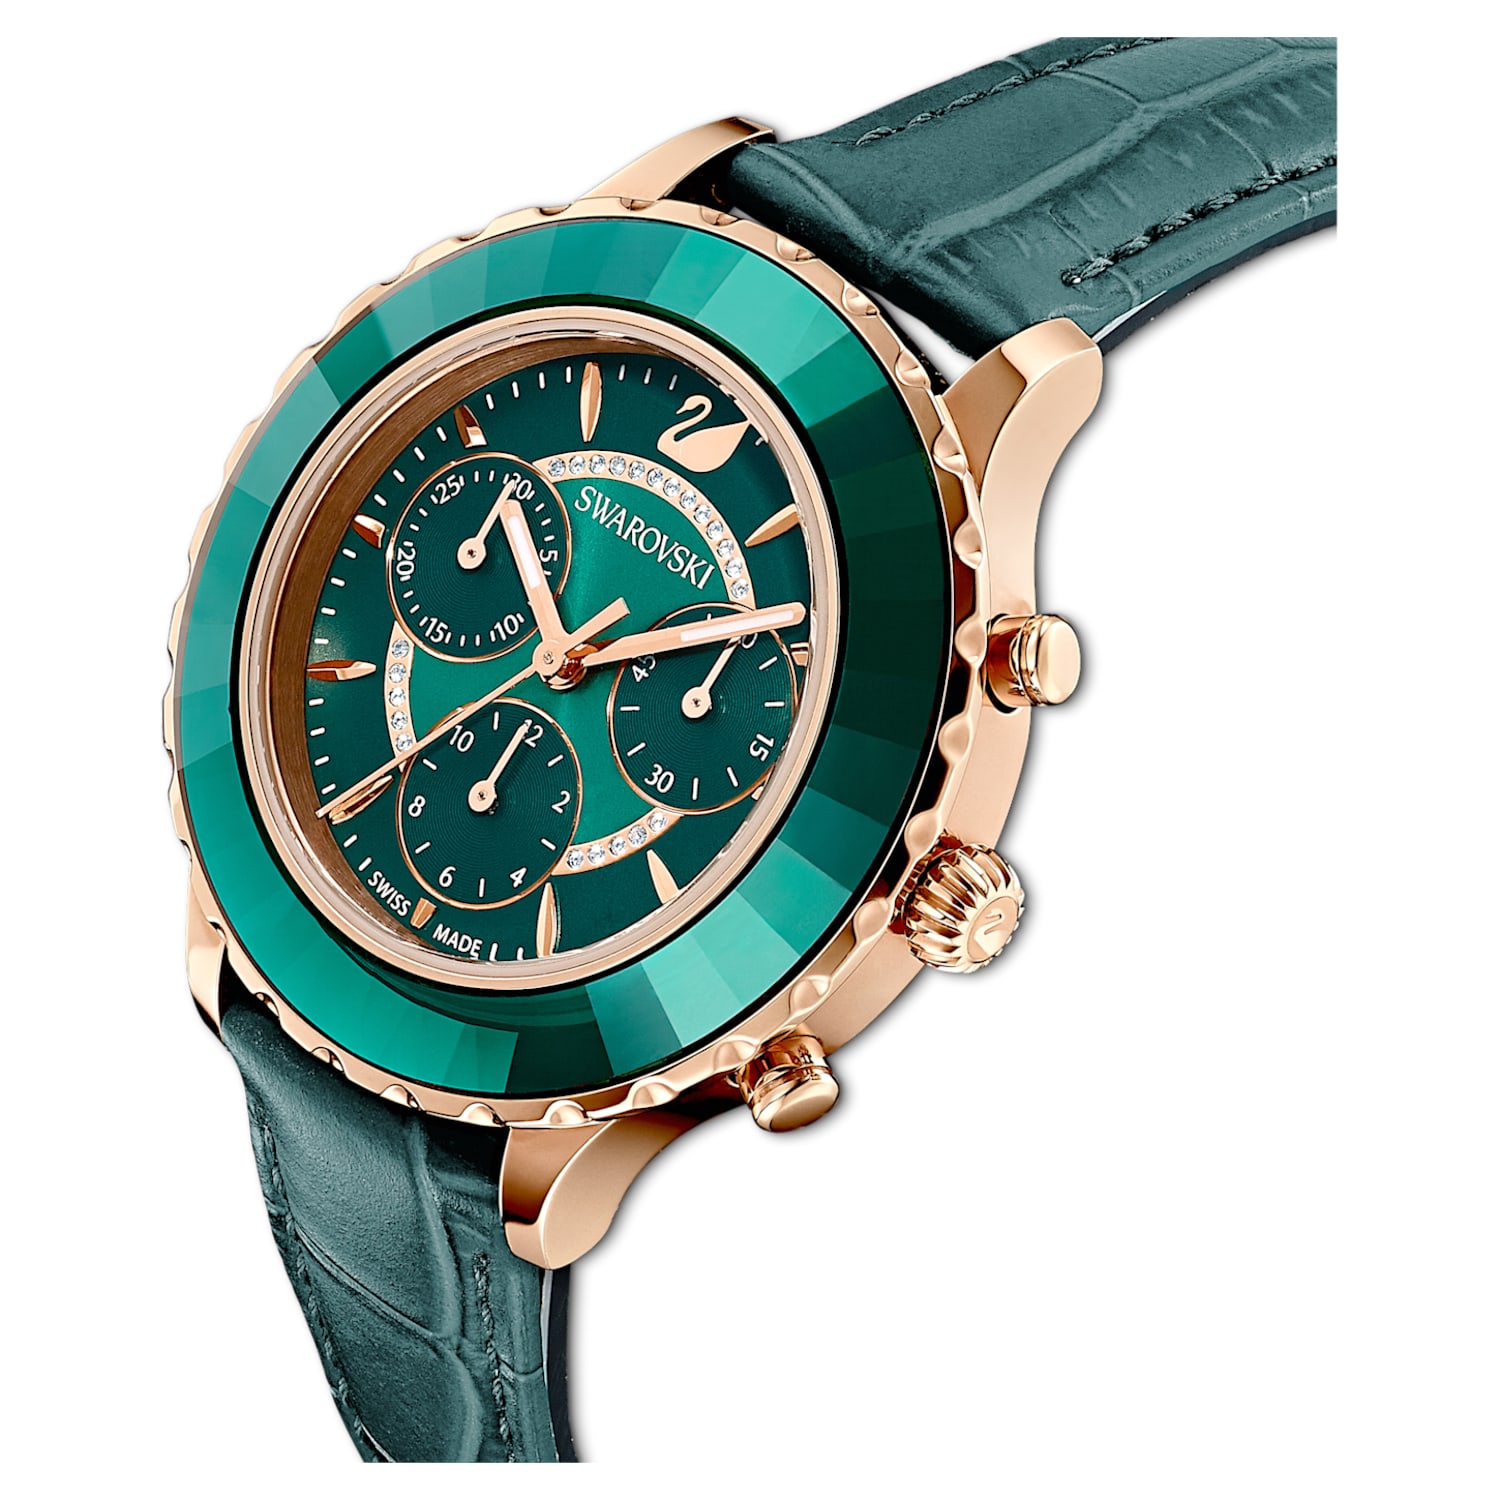 ambición Máquina de escribir término análogo Octea Lux Chrono watch, Swiss Made, Leather strap, Green, Rose gold-tone  finish